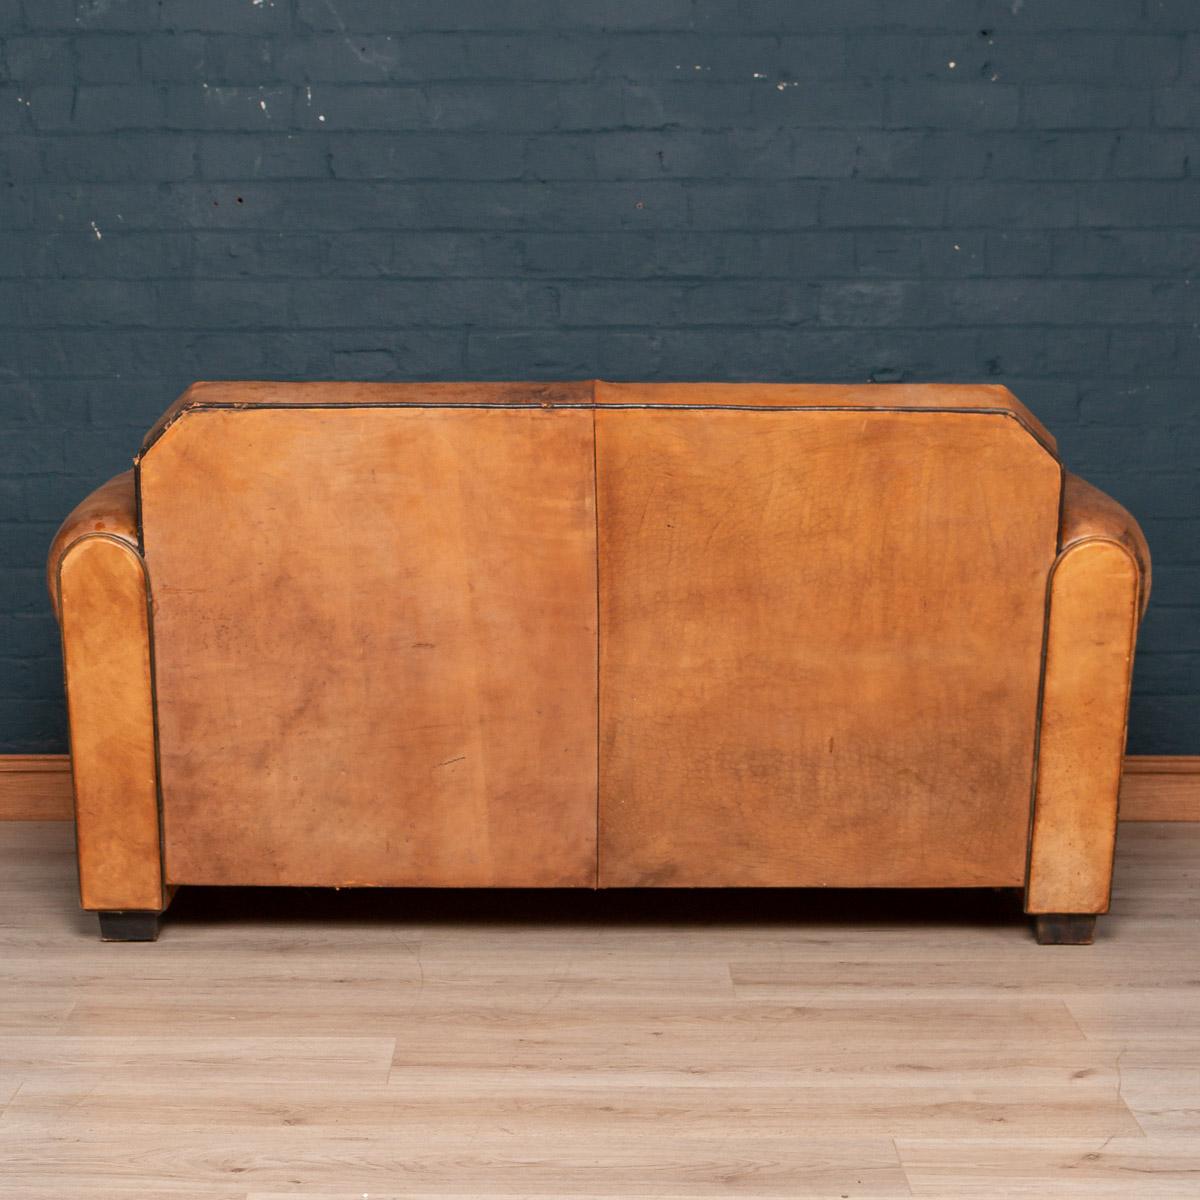 Néerlandais Elegance 20th Century Dutch Two-Seat Tan Leather Sofa (Canapé hollandais à deux places en cuir fauve)